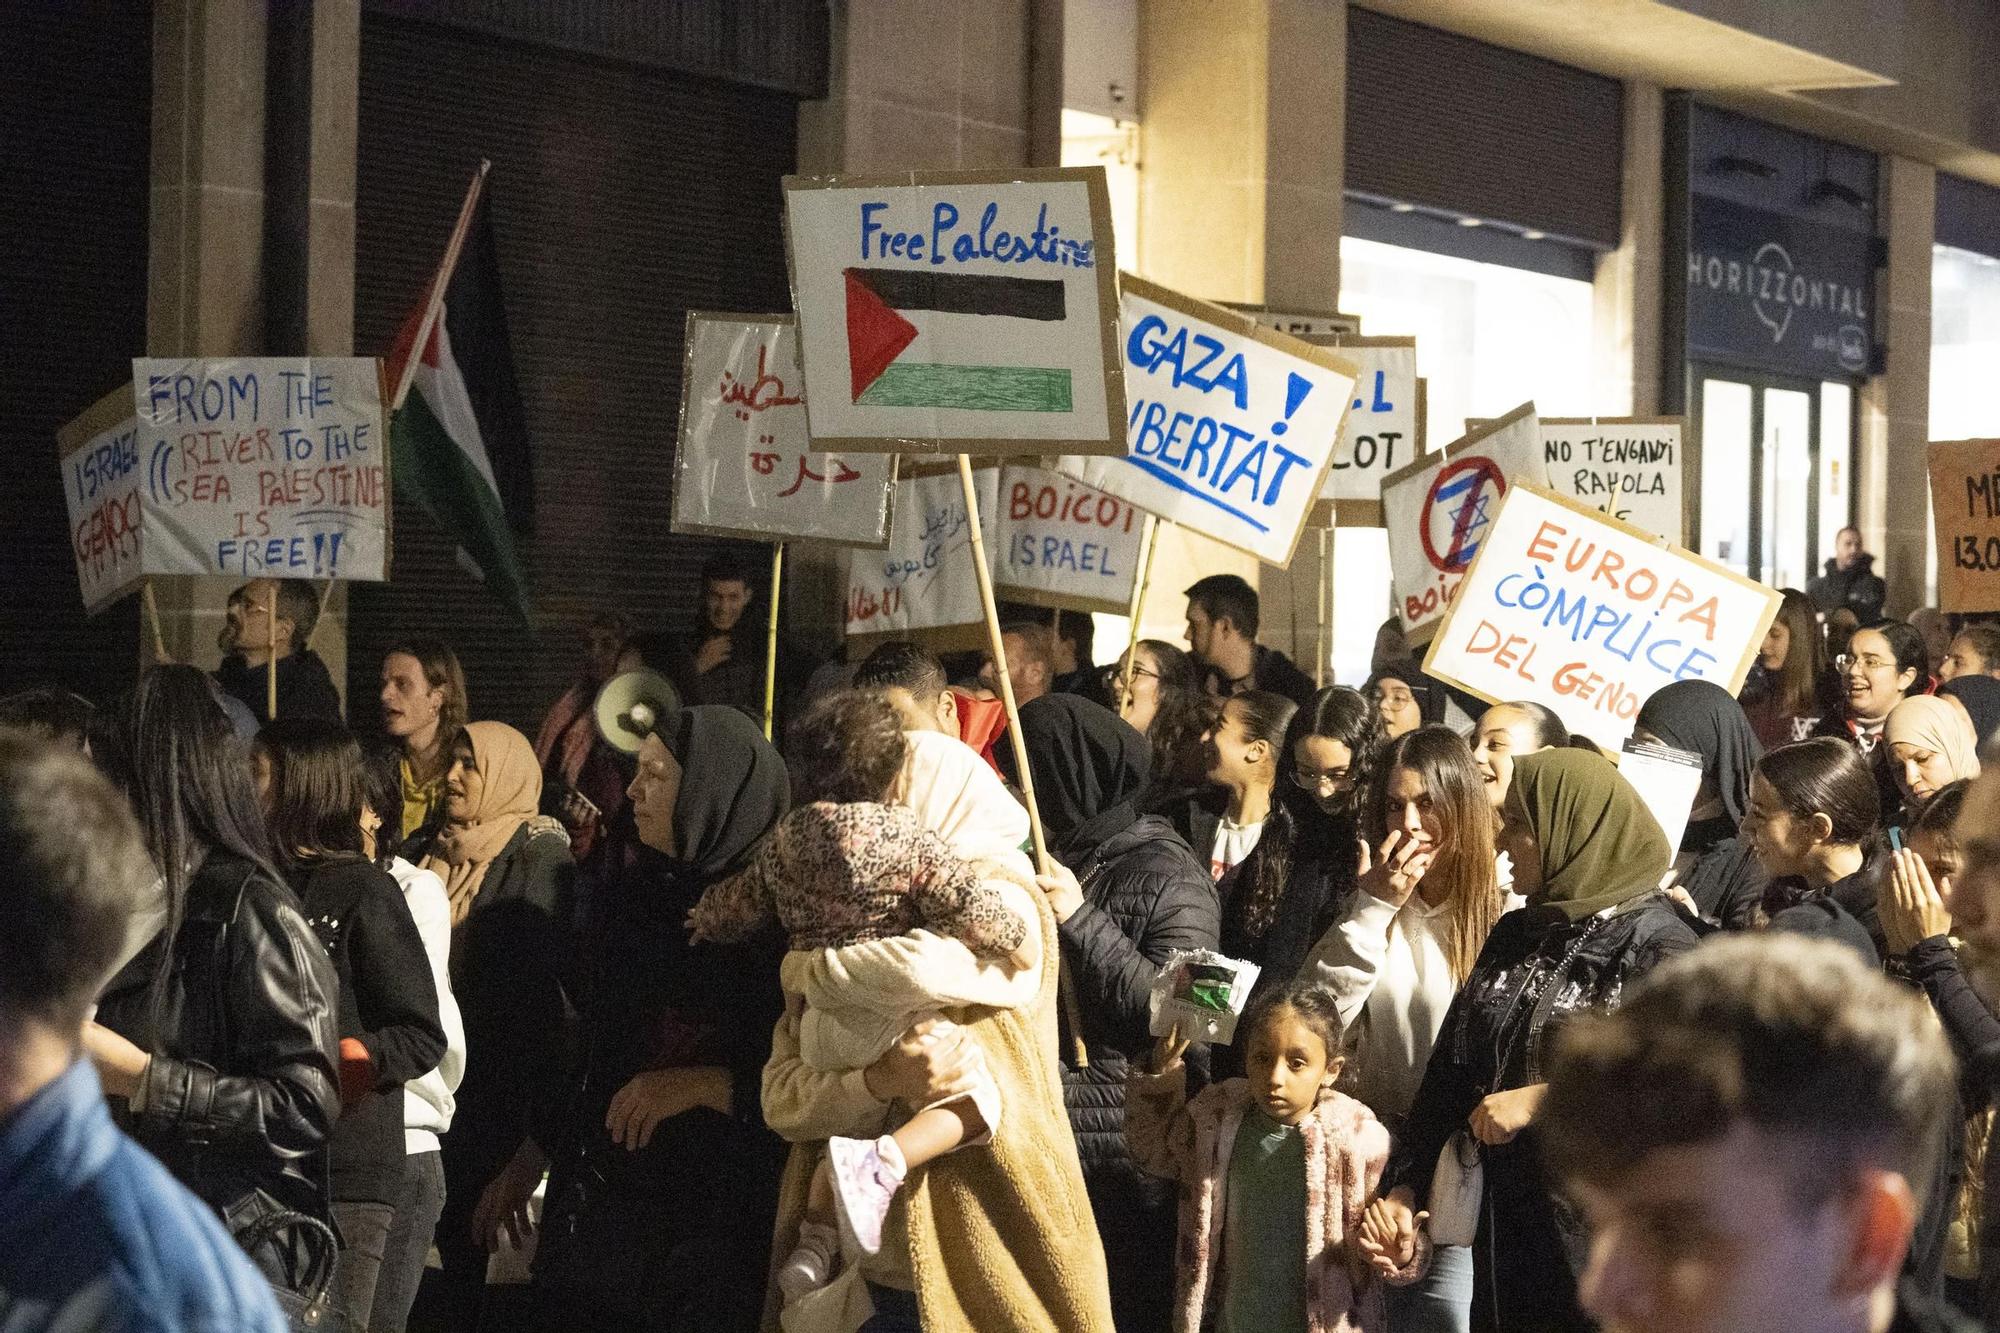 Les imatges de la manifestació a favor de Palestina a Manresa